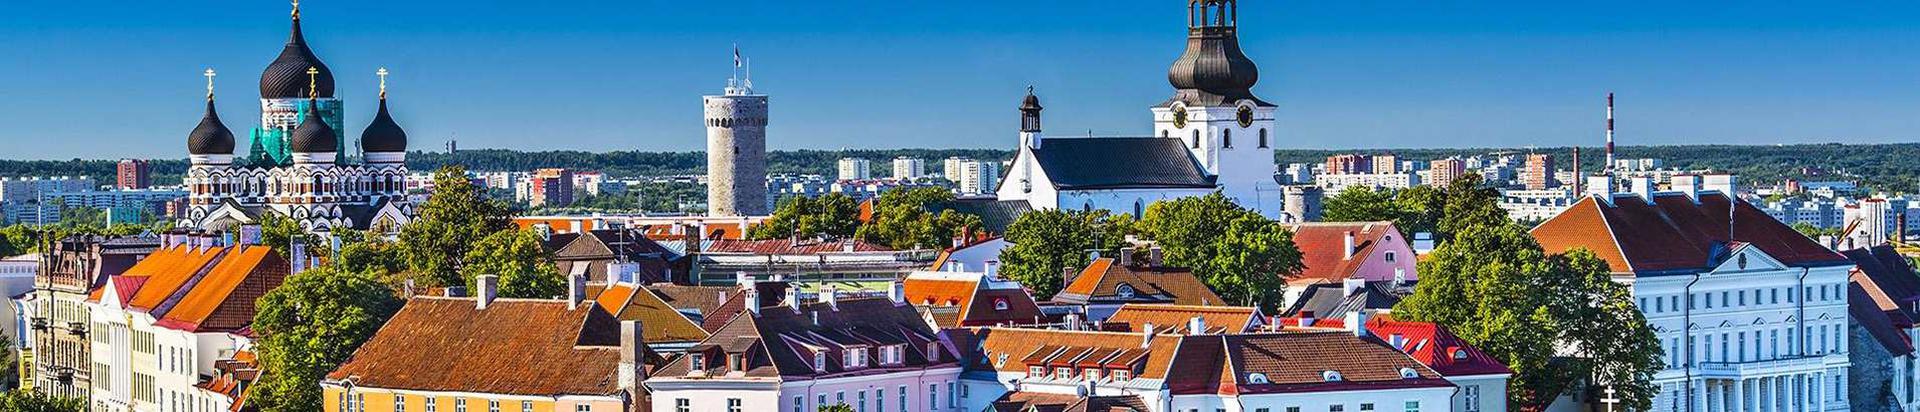 Majandus- ja Kommunikatsiooniministeerium on Eesti valitsusasutus, mis teostab riigivõimu majandus- ja sidevaldkonnas.